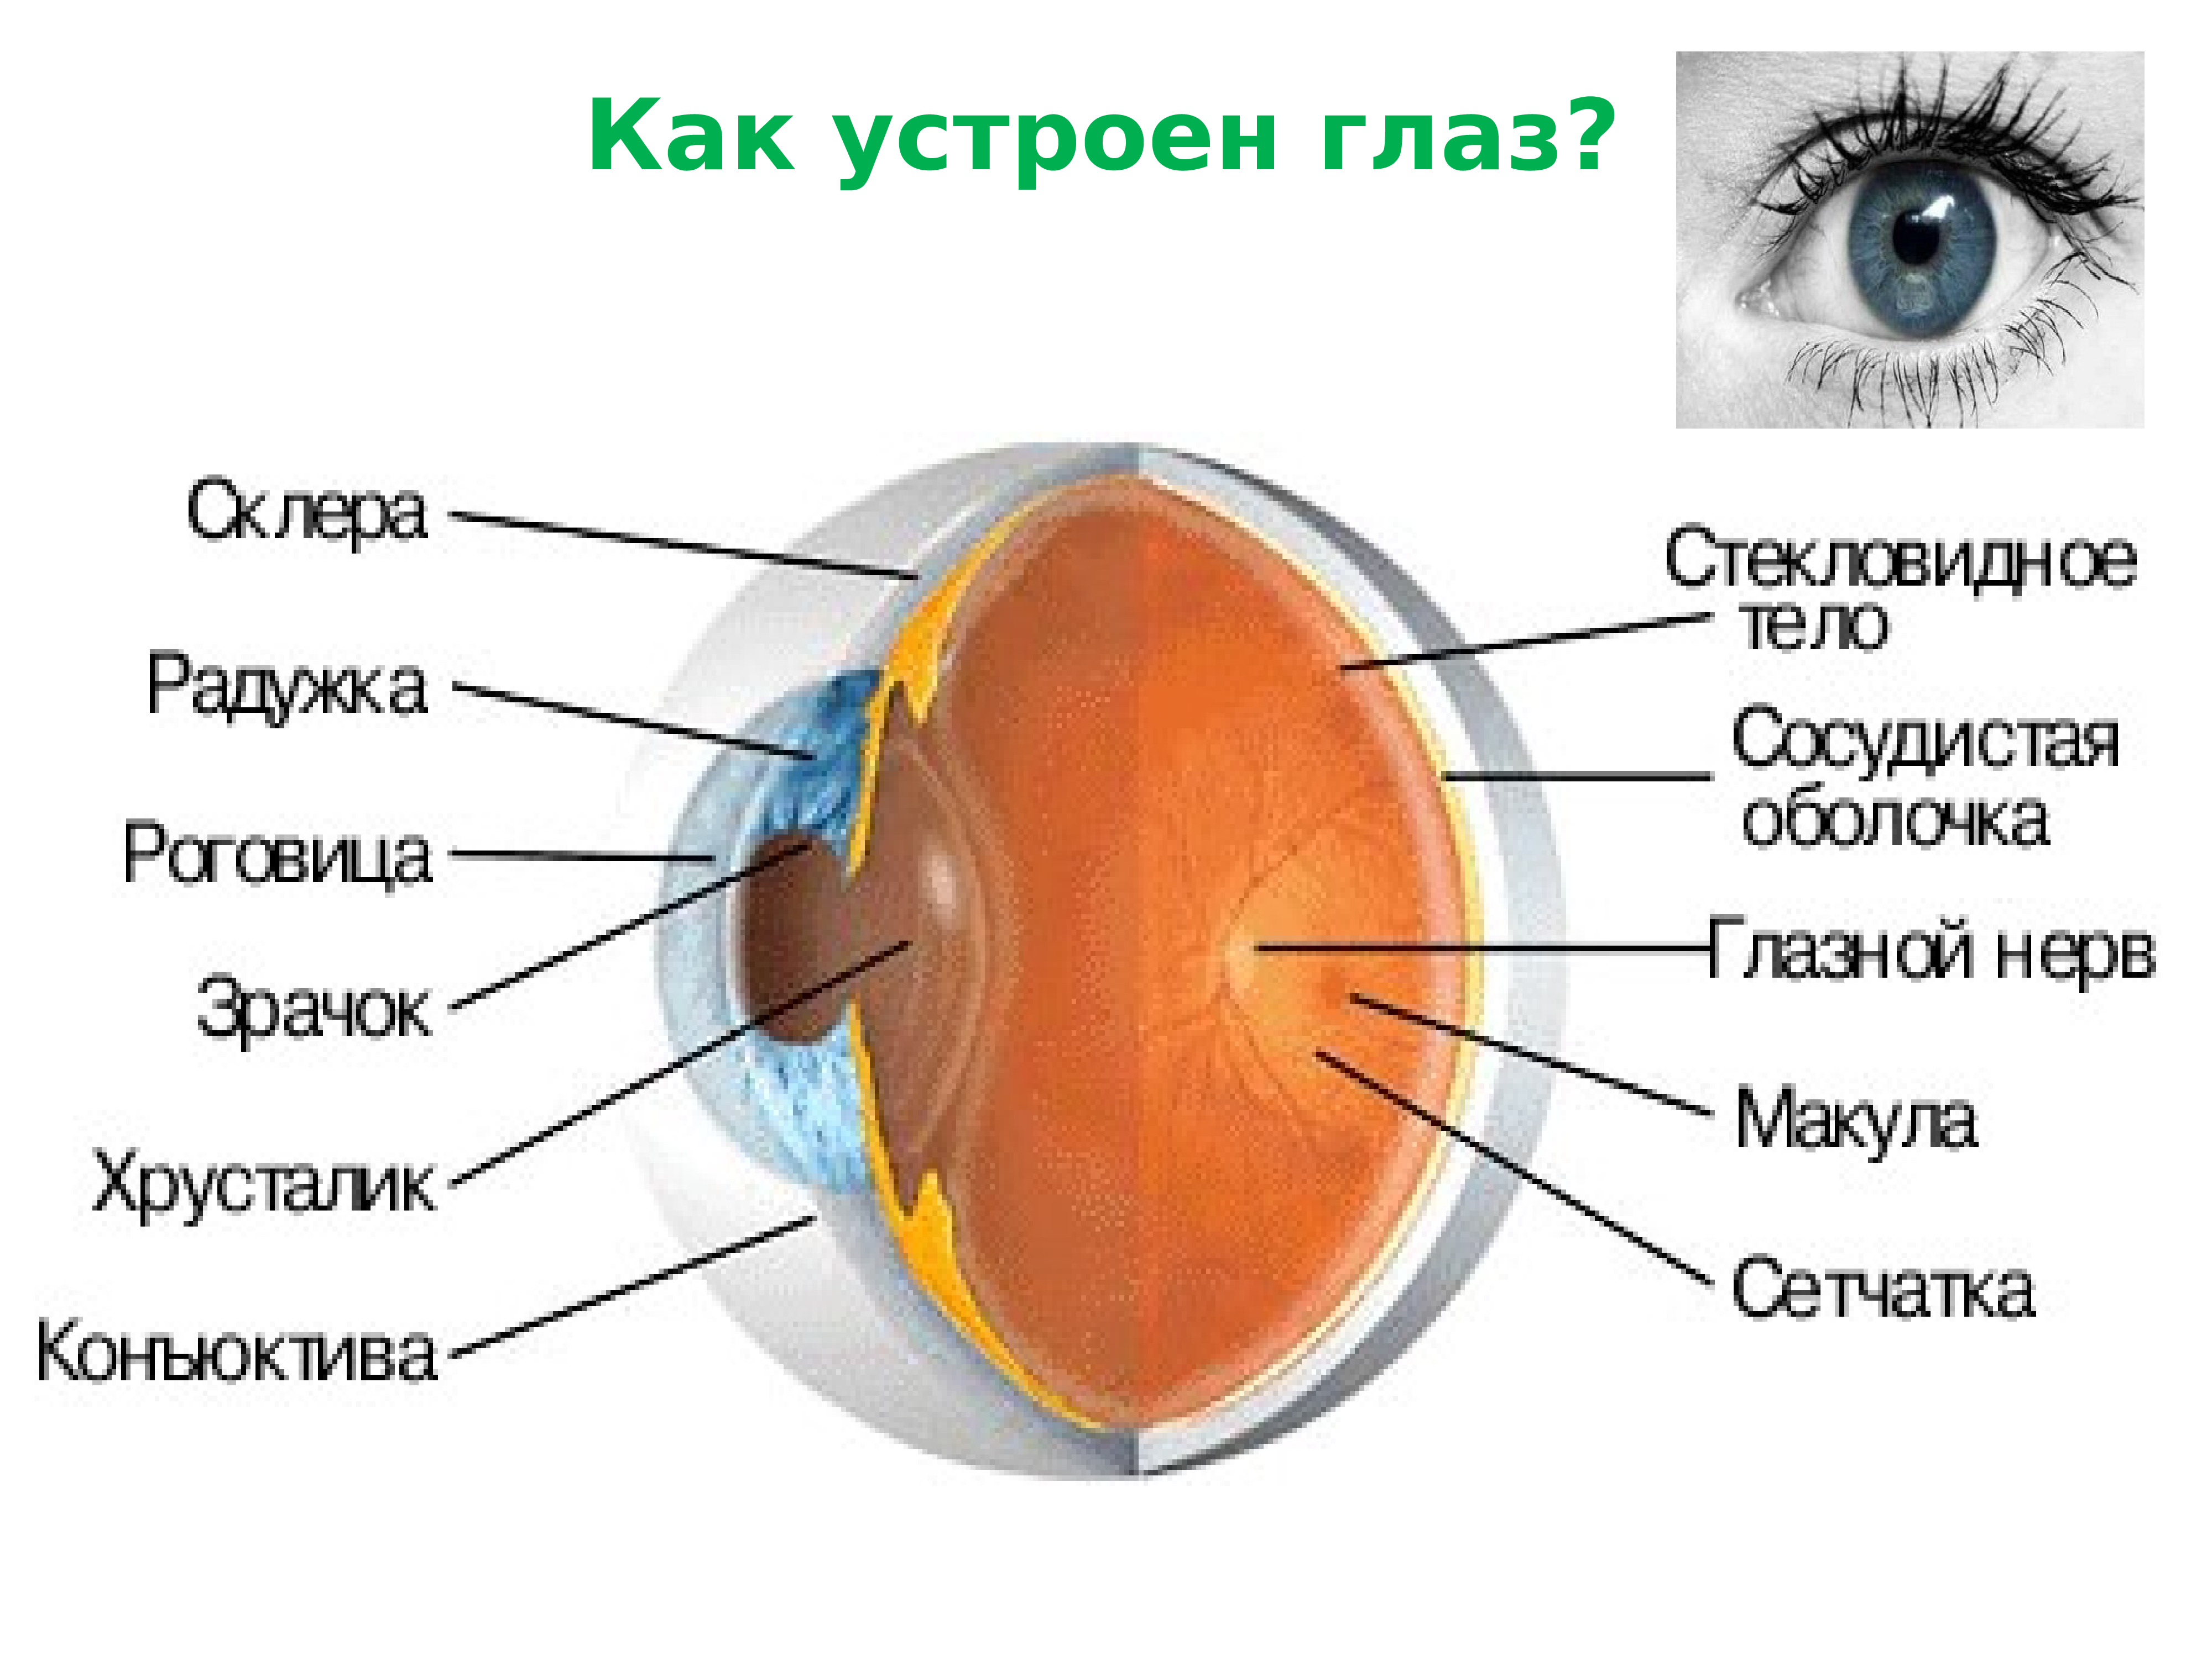 Склера на схеме глаза